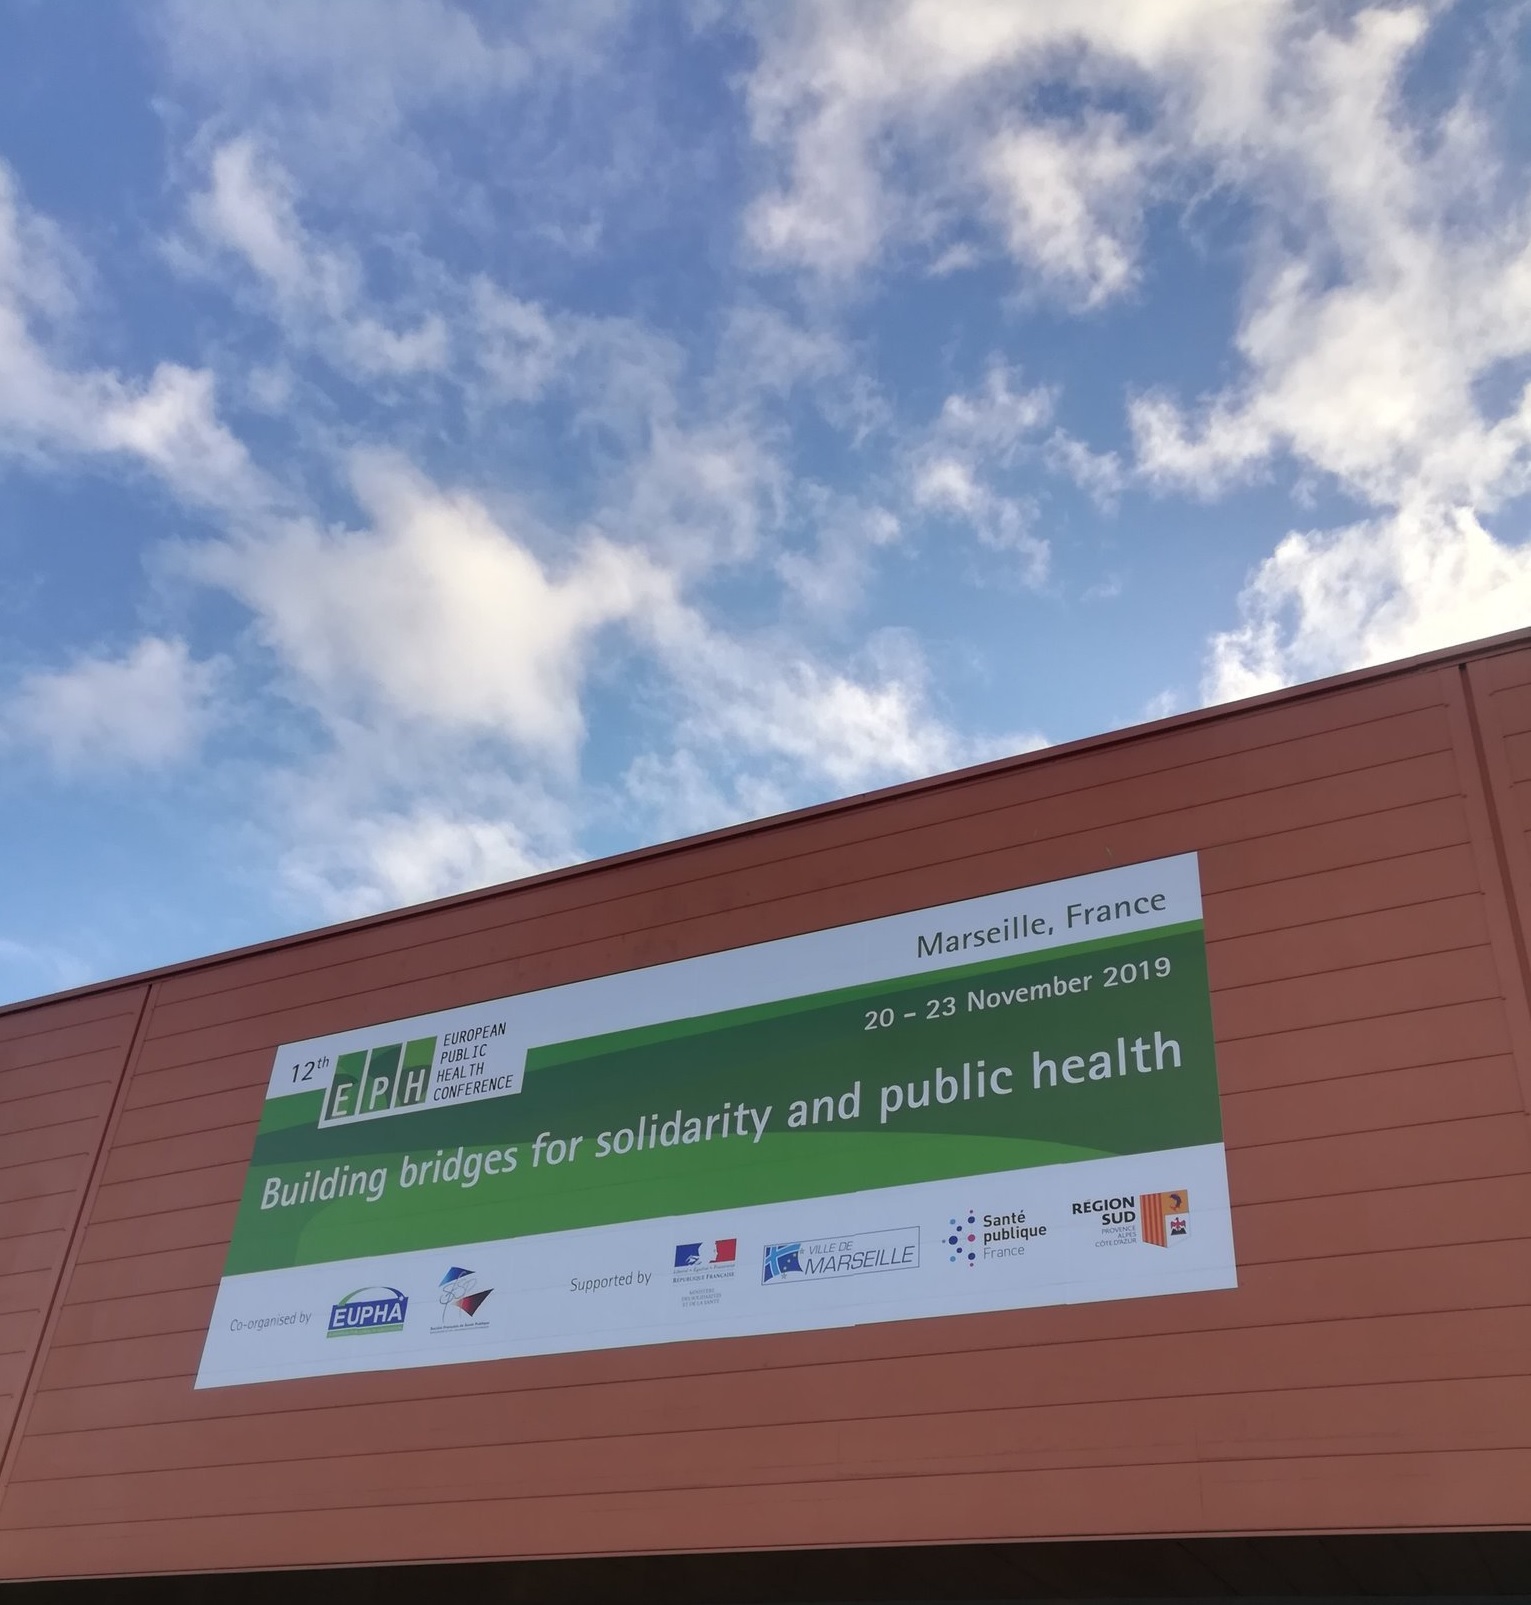 Resultados do projecto Equity-LA II no 12º Congresso Europeu de Saúde Pública em Marselha (França)